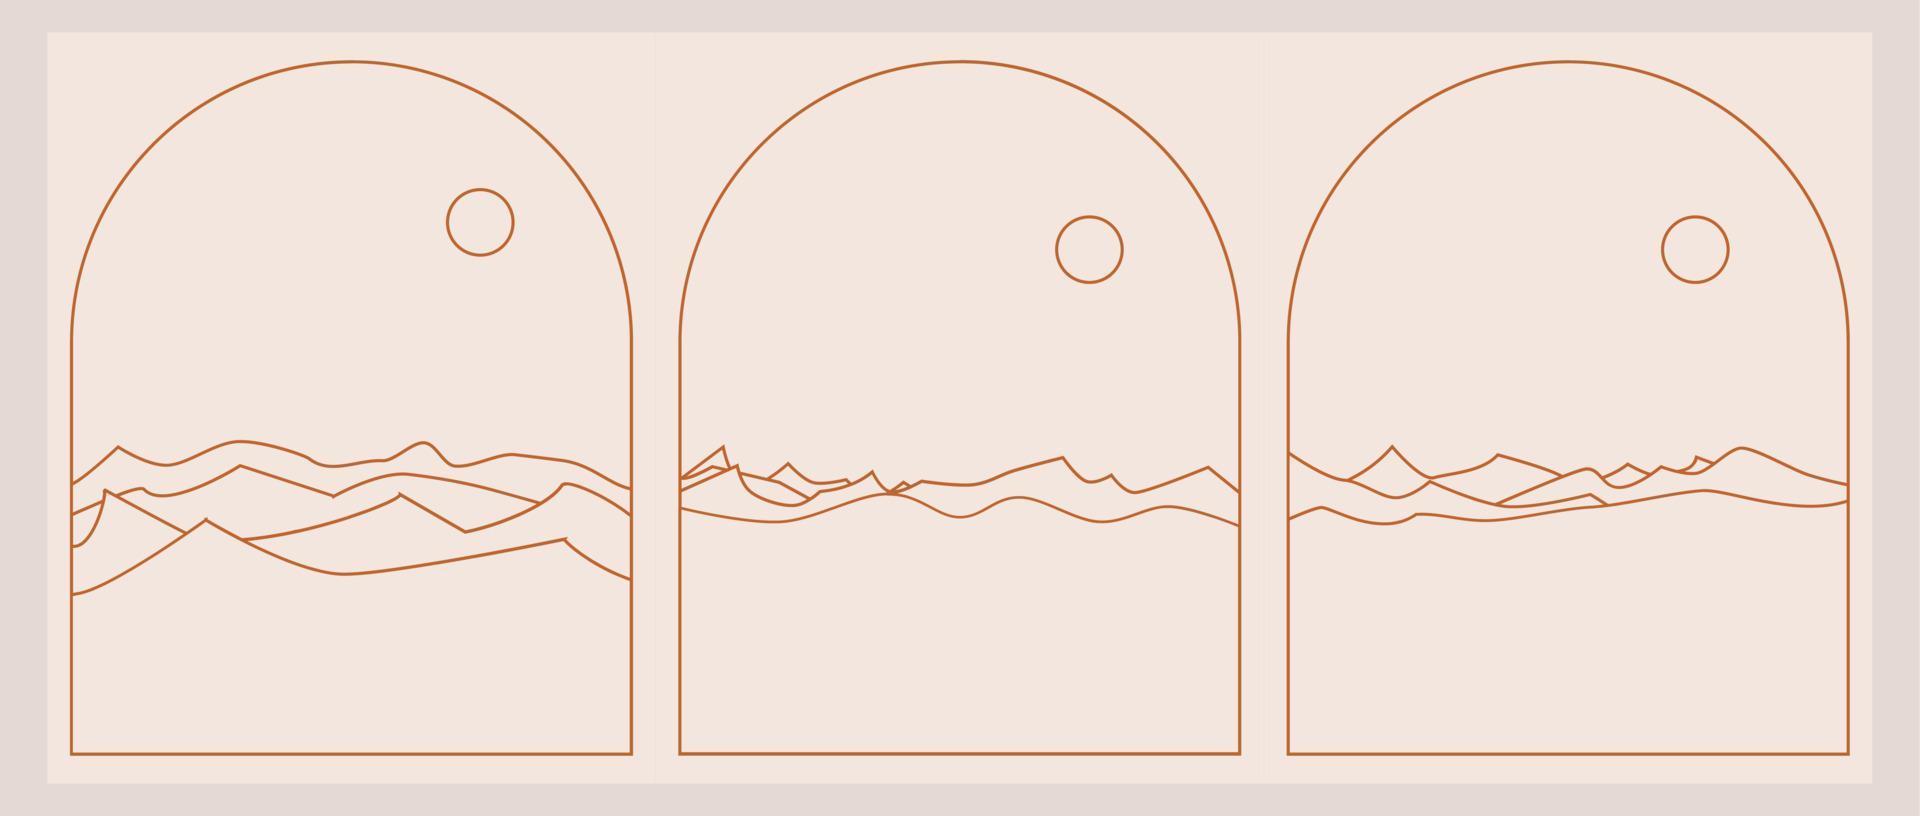 conjunto de logotipos boho paisajísticos en un moderno estilo minimalista vector